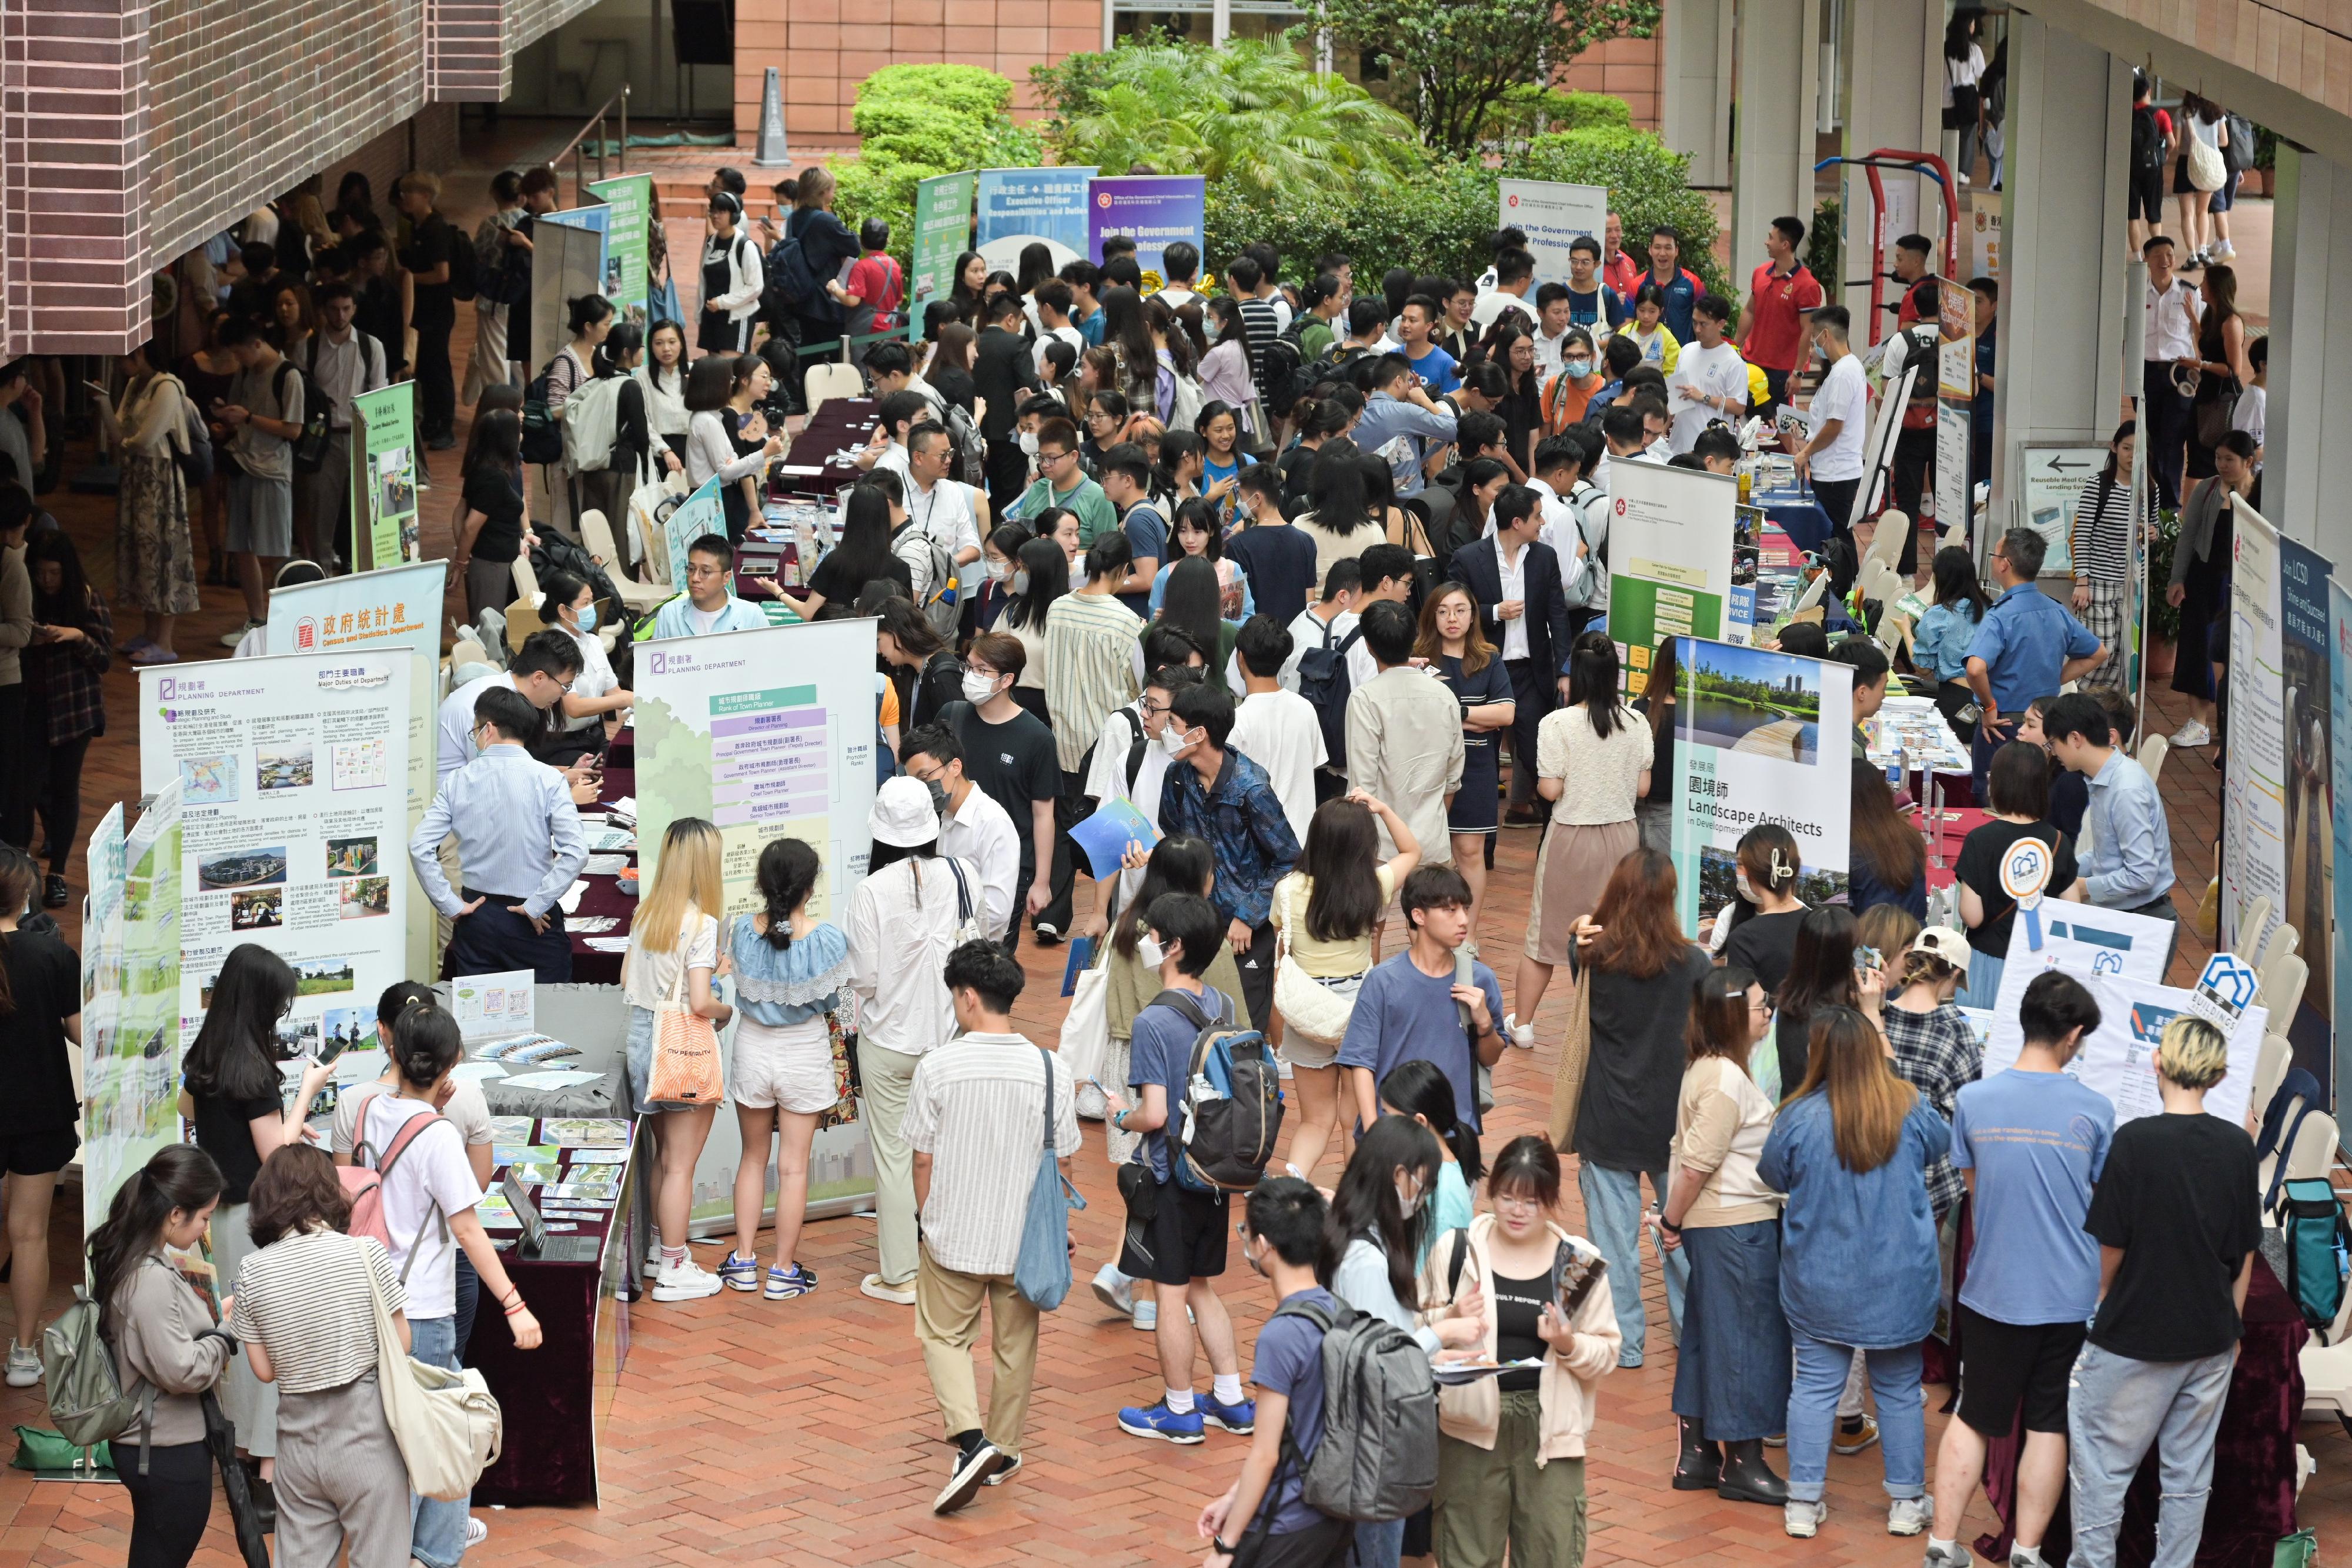 二十一個政策局和部門參與今日（九月十四日）在香港大學舉行的政府職位招聘展覽，讓同學可多認識政府不同職系的工作，考慮政府為他們提供的不同就業機會。